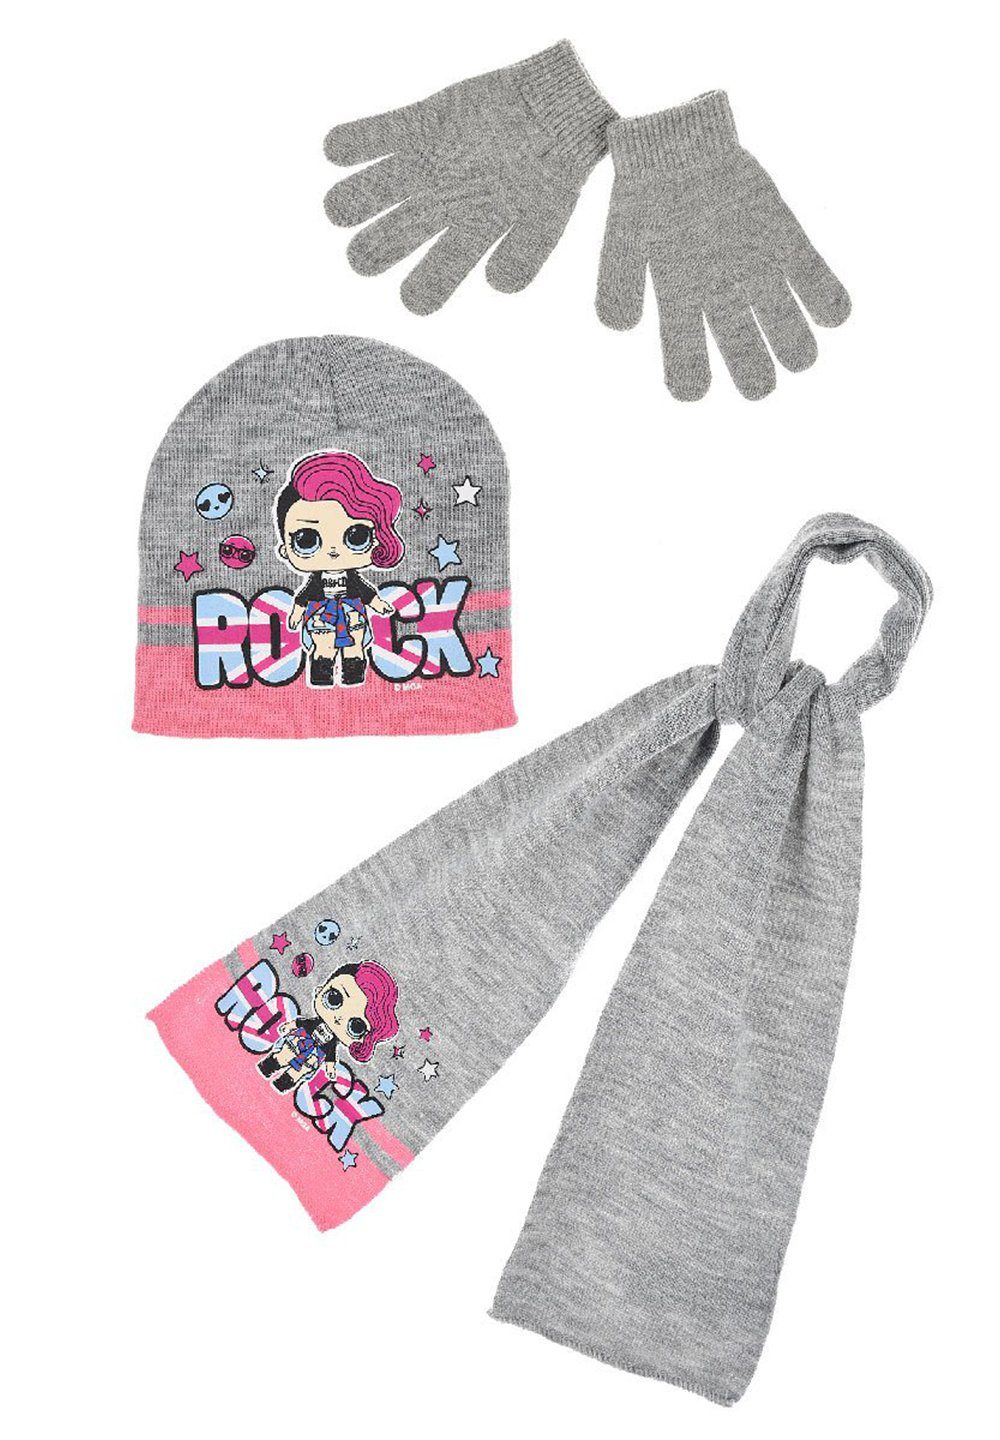 L.O.L. SURPRISE! Beanie Kinder Mädchen Winter-Set Mütze, Schal und Handschuhe 3-tlg. (SET) Grau | Beanies